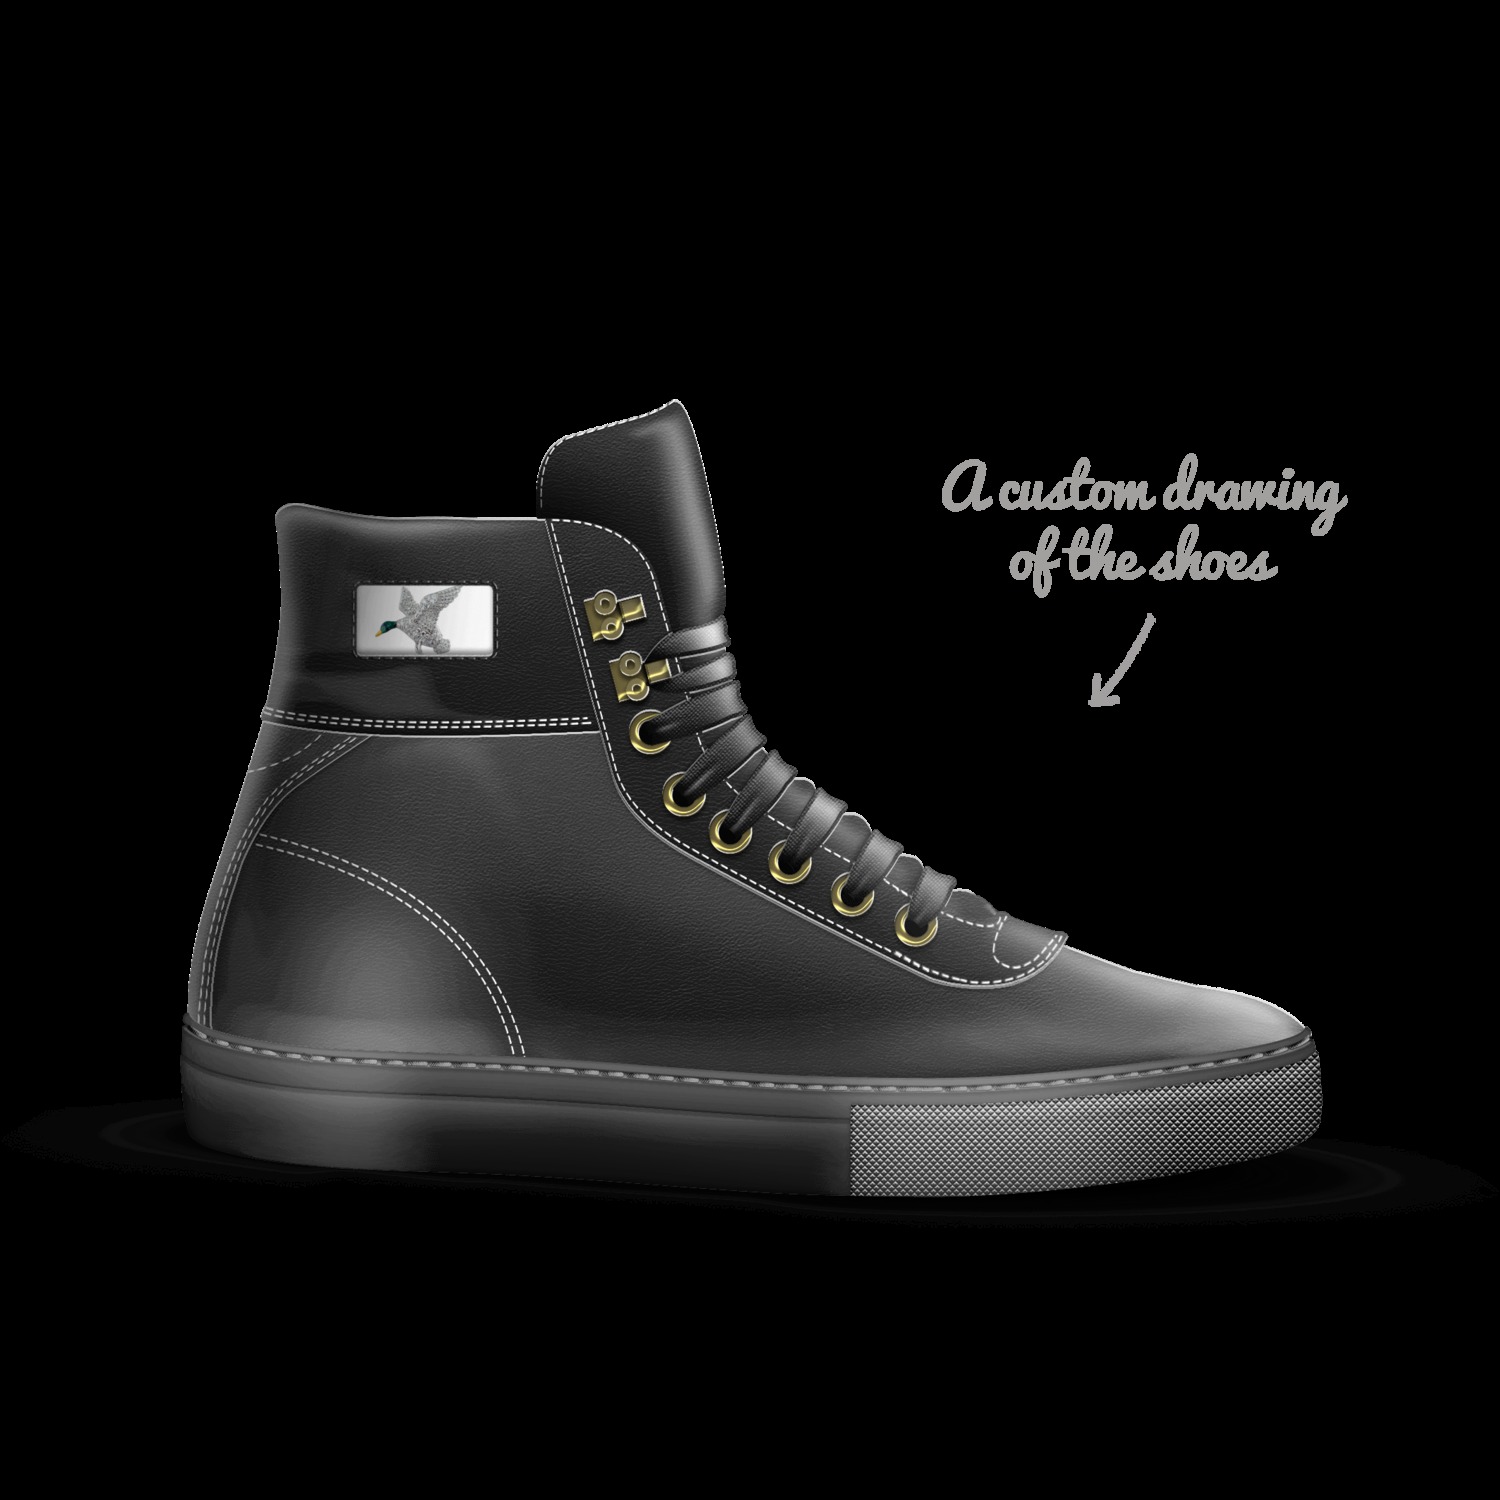 DD | A Custom Shoe concept by Josh